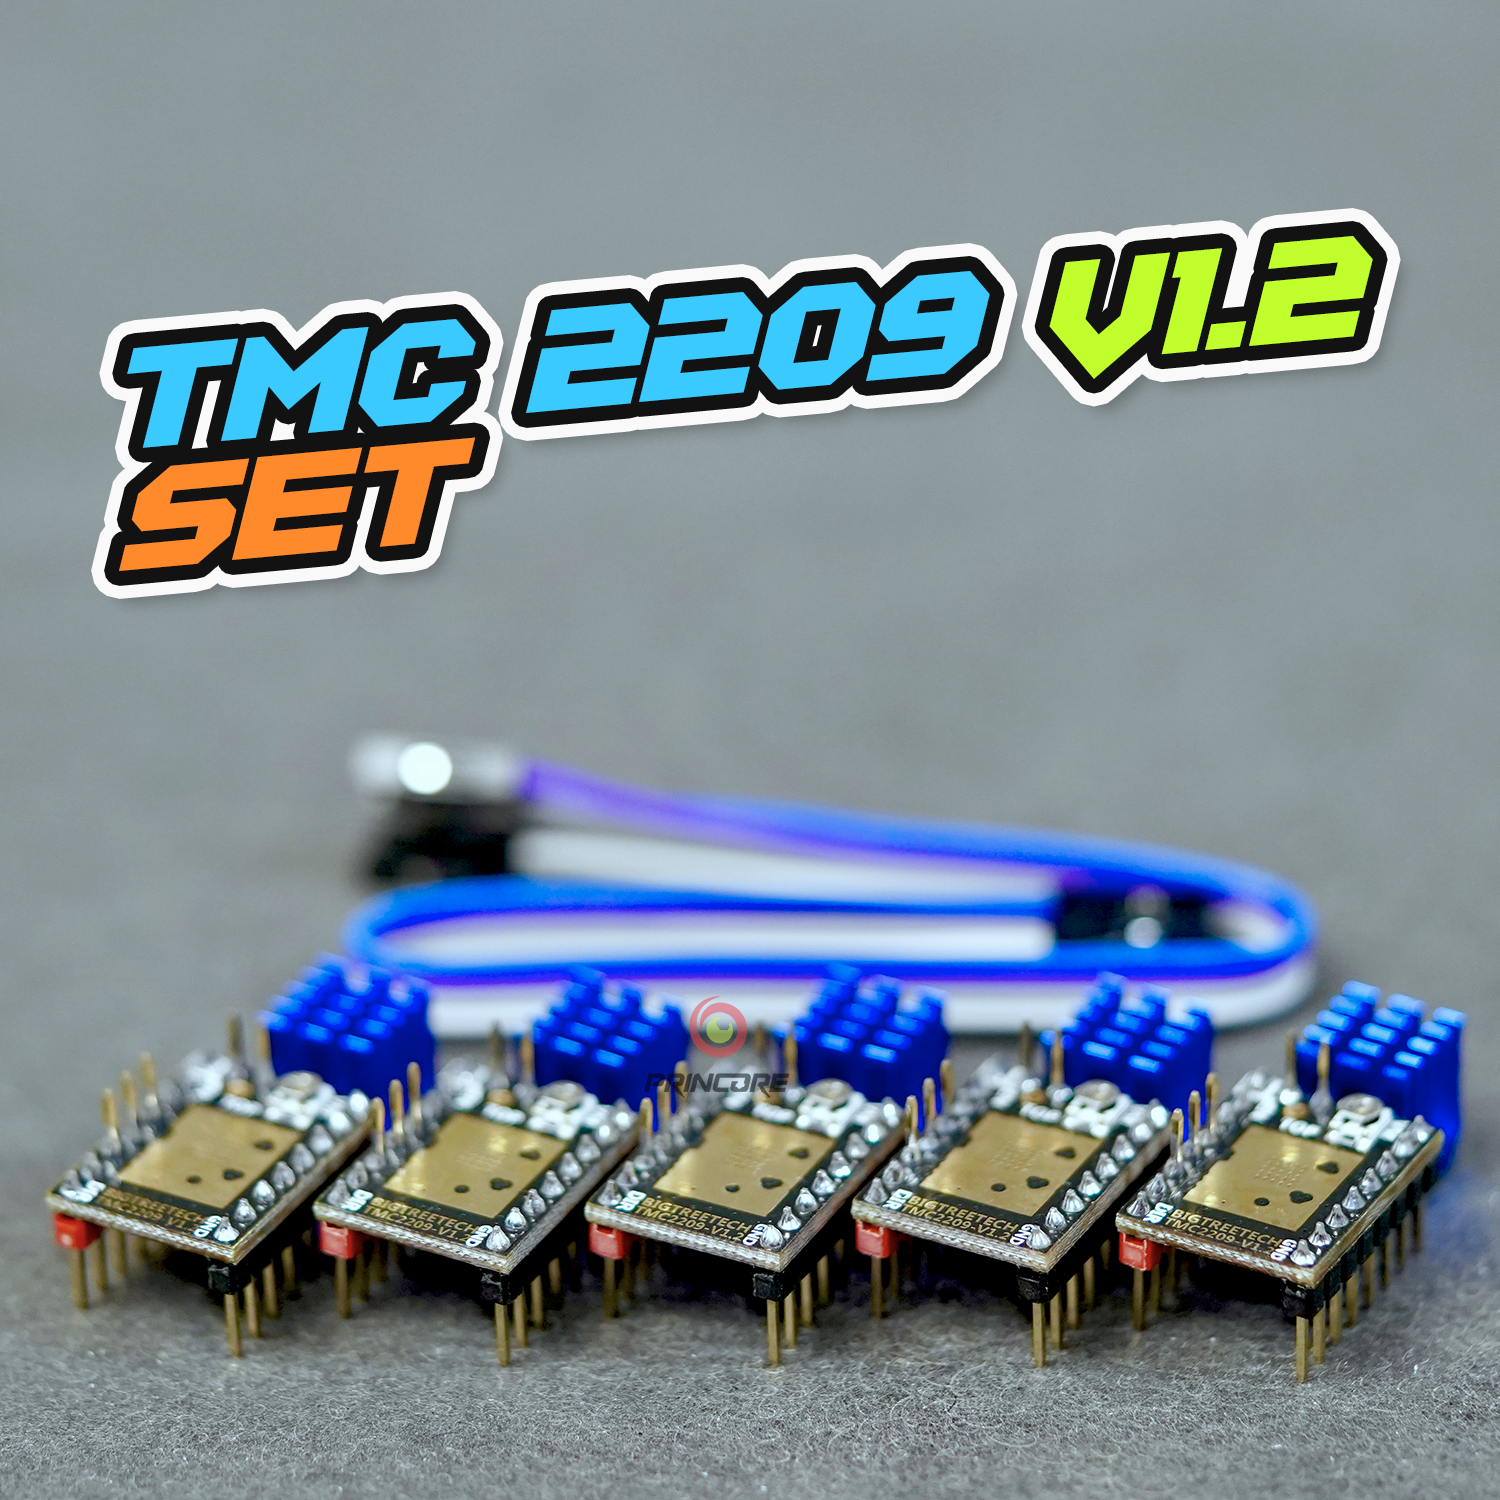 FUNDGRUBE - TMC 2209 V1.2 Motortreiber - einzeln [8,80€/Stück] - Kat01